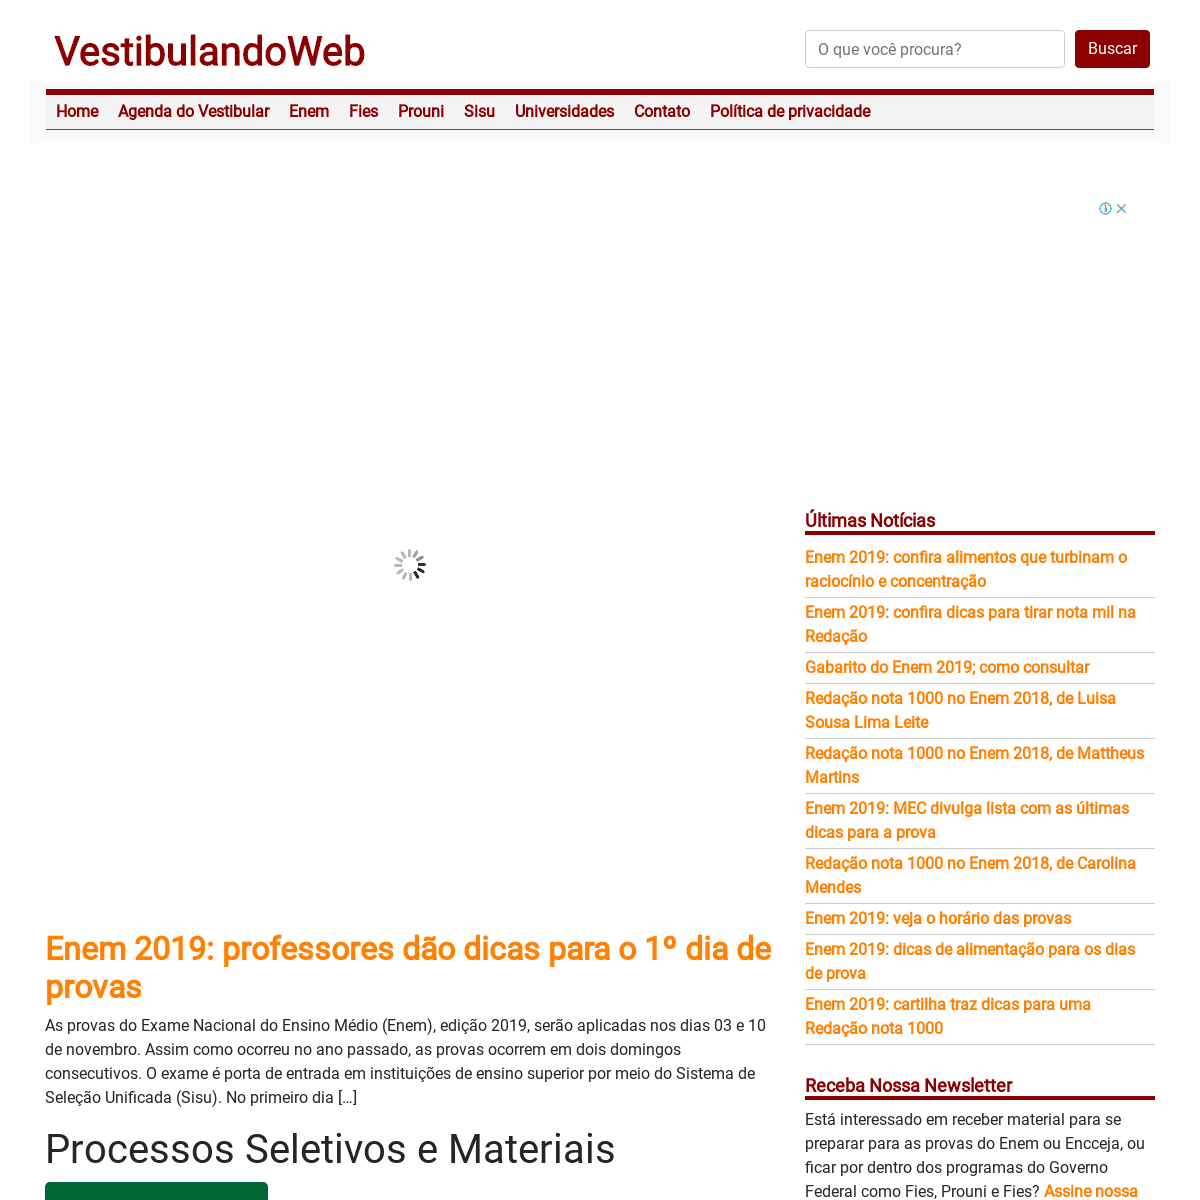 A complete backup of vestibulandoweb.com.br